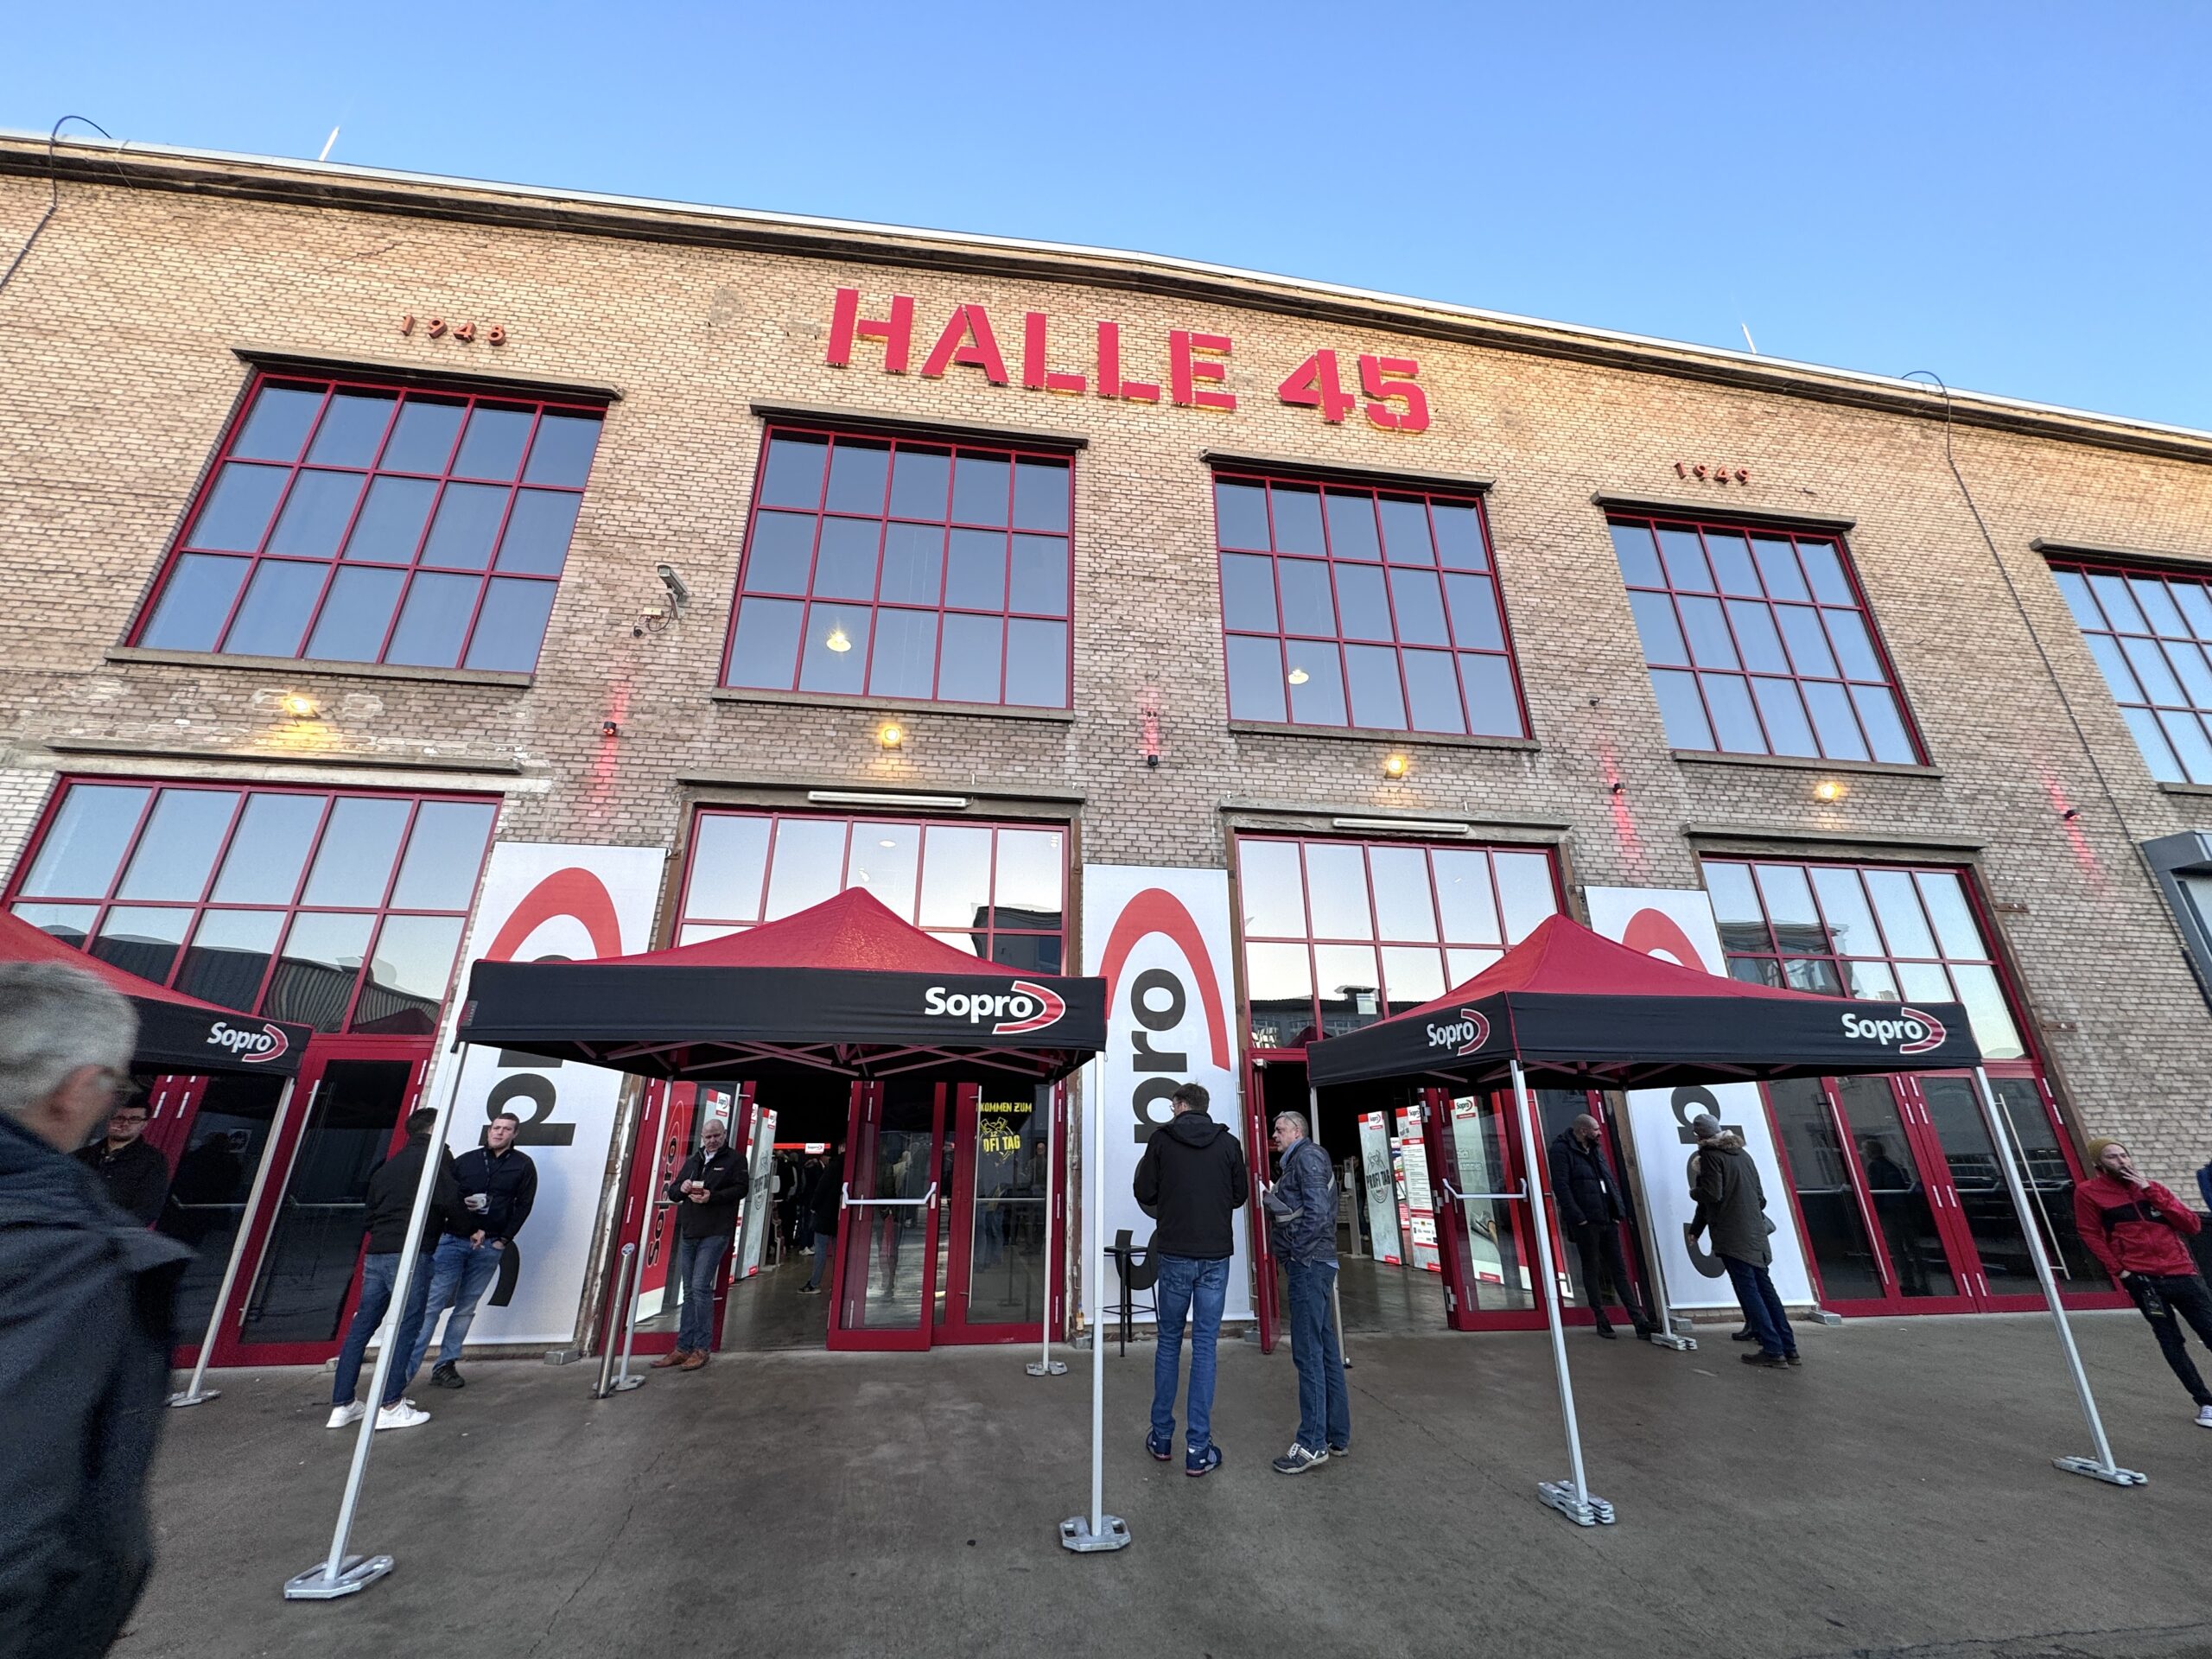 Coole Location: die Halle 45 in Mainz.